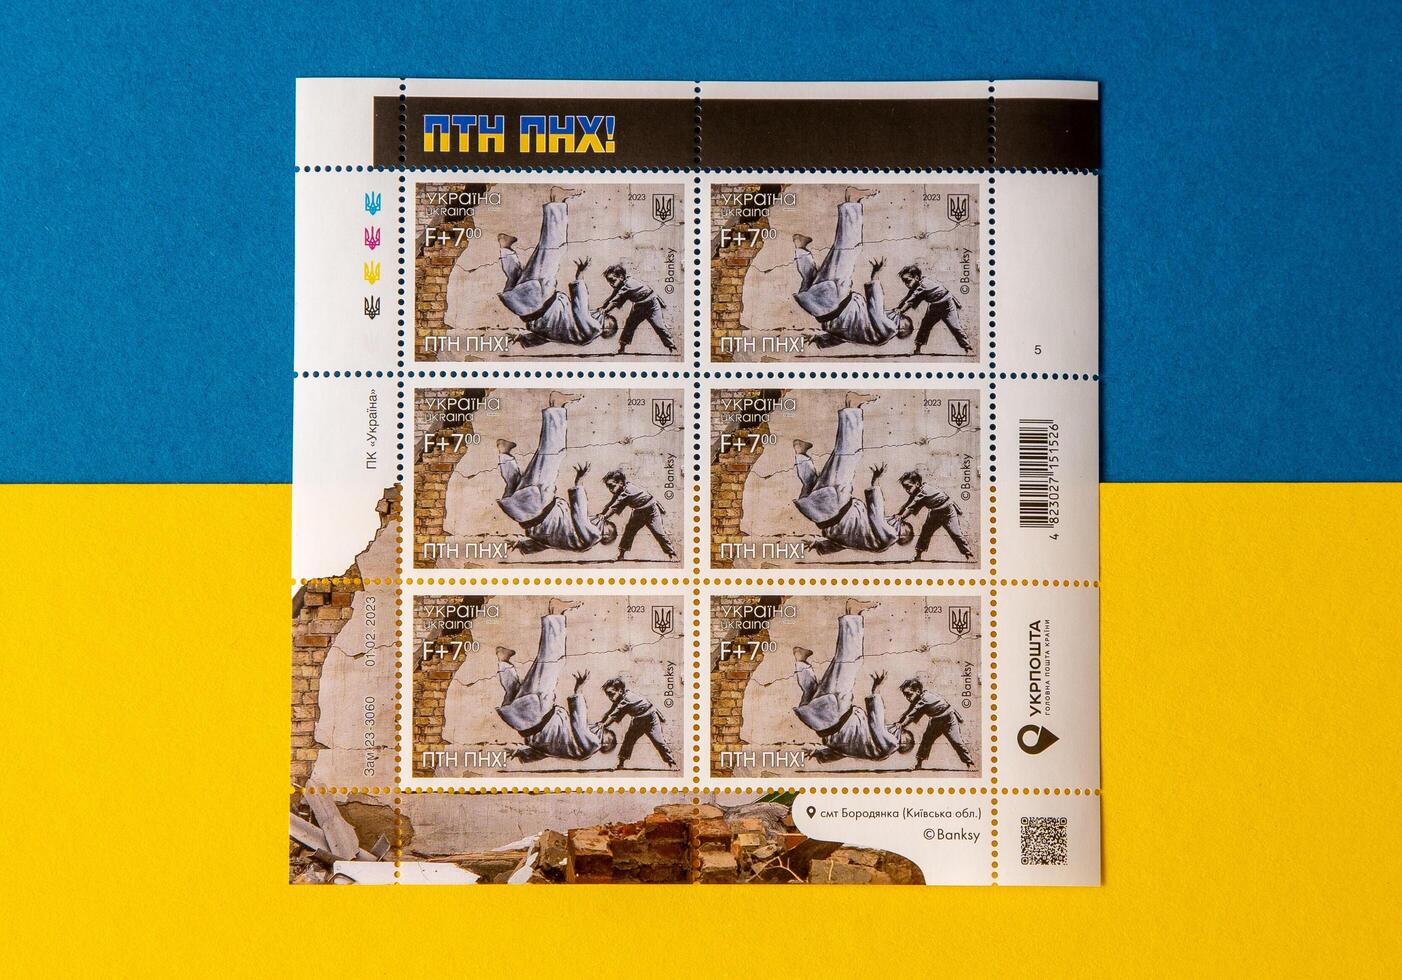 Nouveau ukrainien timbre avec banky graffiti dans borodianka. ptn pnkh dévoué à le anniversaire de la russie guerre contre Ukraine. défaite Poutine judo. kyiv - 24 février 2023. photo